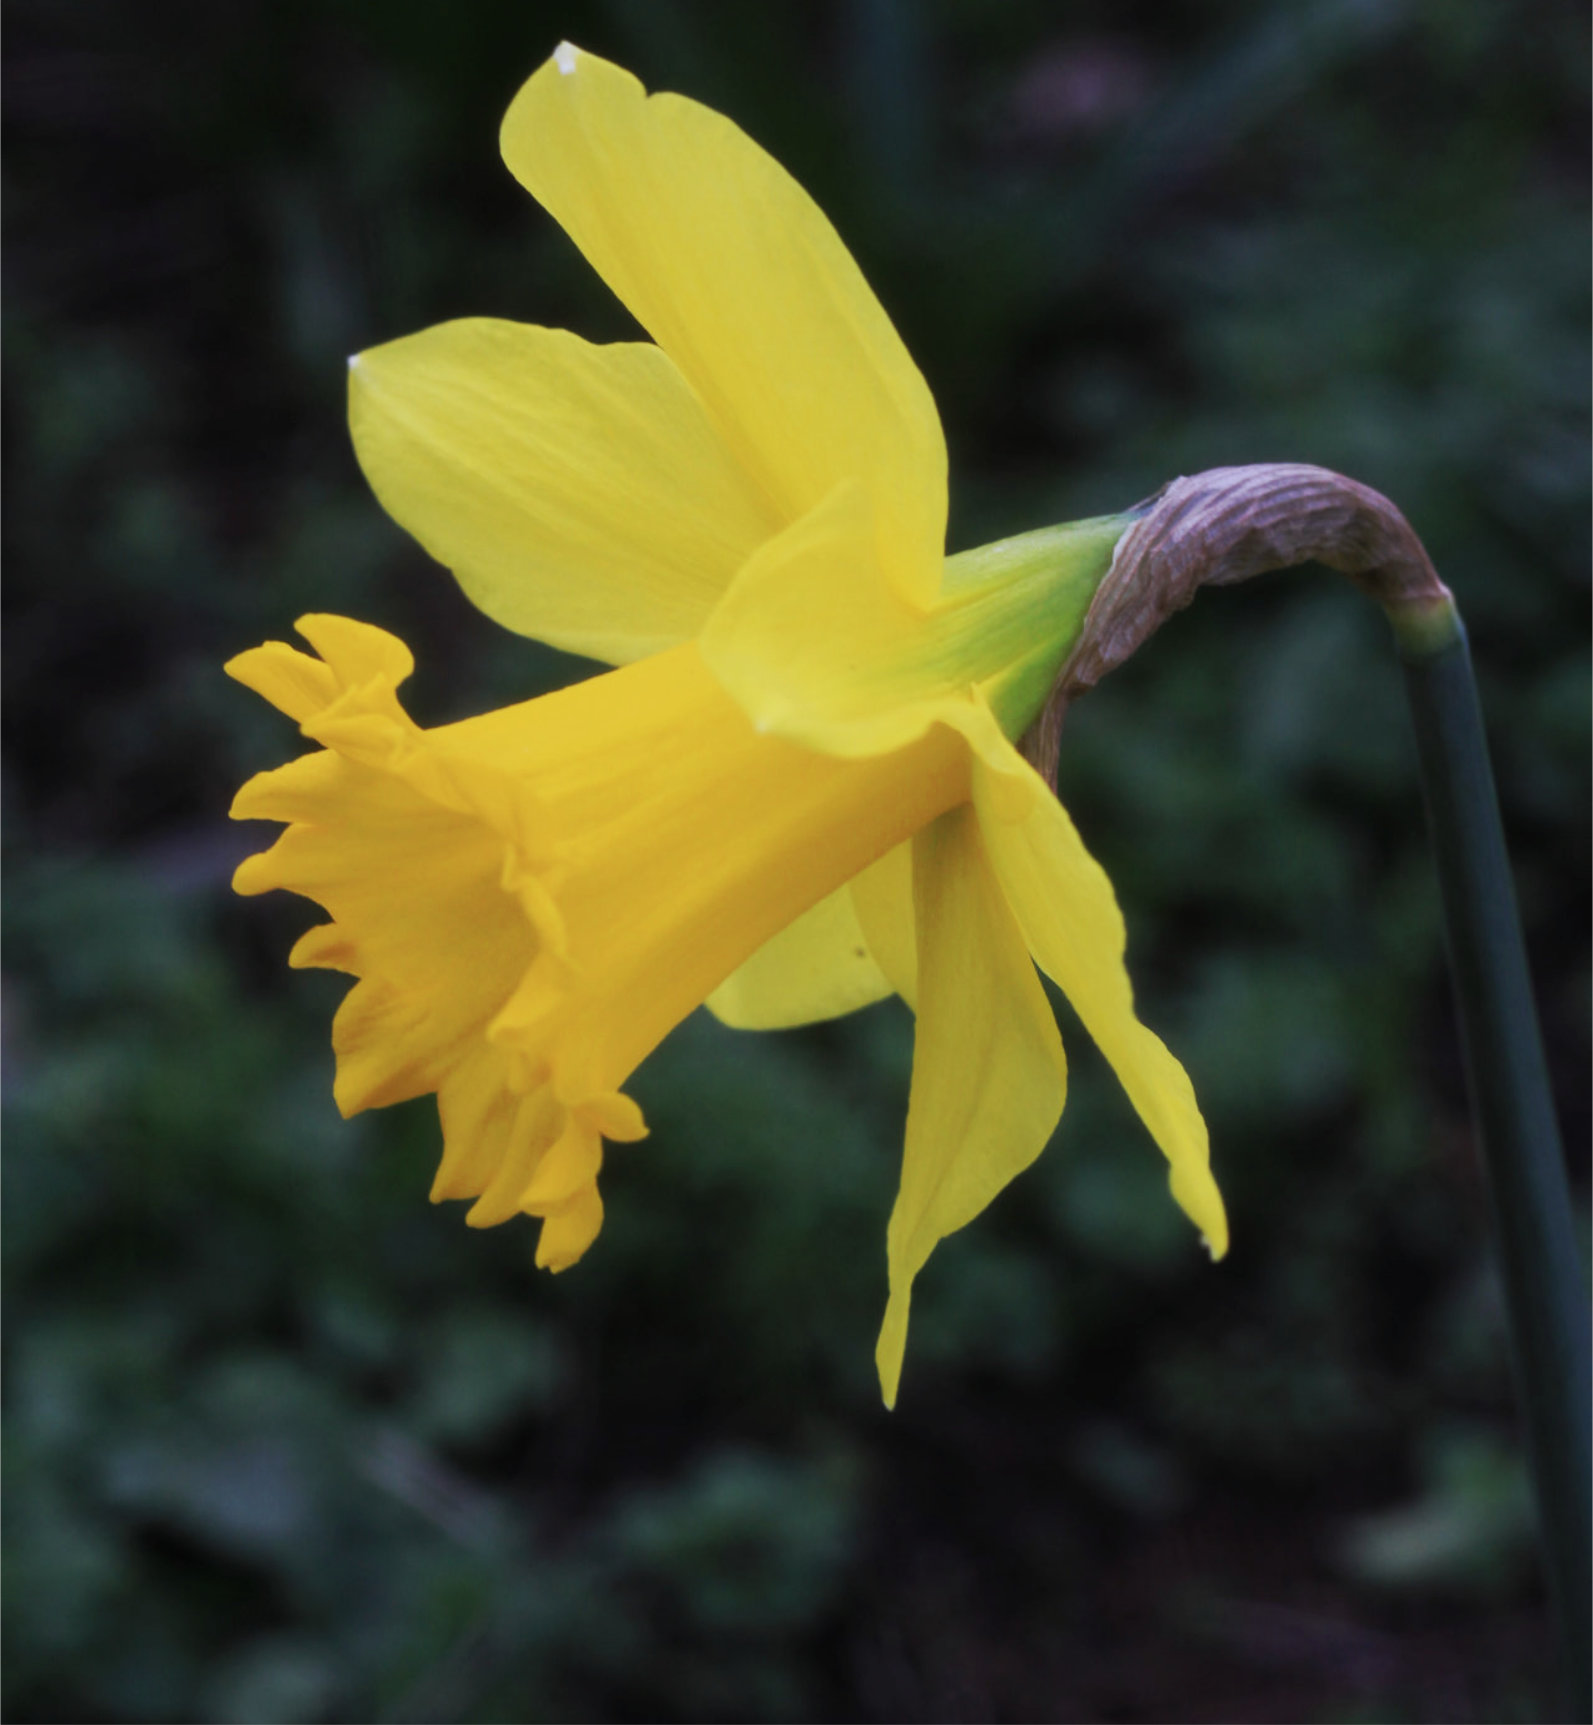 Daffodil 2014 by StarFields